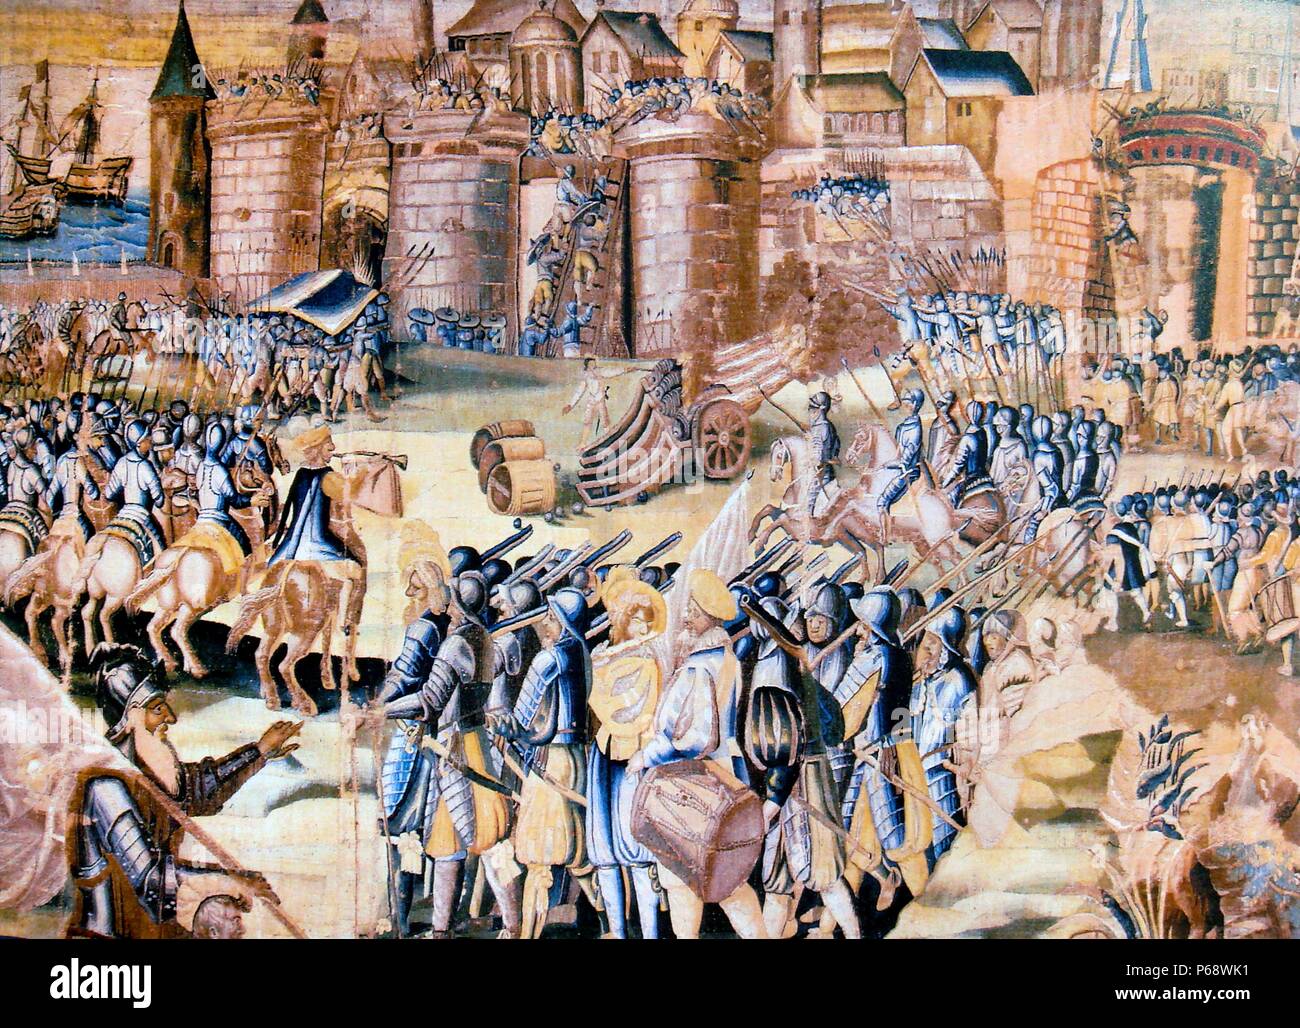 Wandteppich mit der Darstellung der Belagerung von La Rochelle von 1572 - 1573. militärischen Angriff auf die Hugenotten - gehaltene Stadt La Rochelle von katholischen Truppen während der vierten Phase der Französischen Religionskriege, nach dem August 1572 St. Bartholomew's Tag Massaker Stockfoto